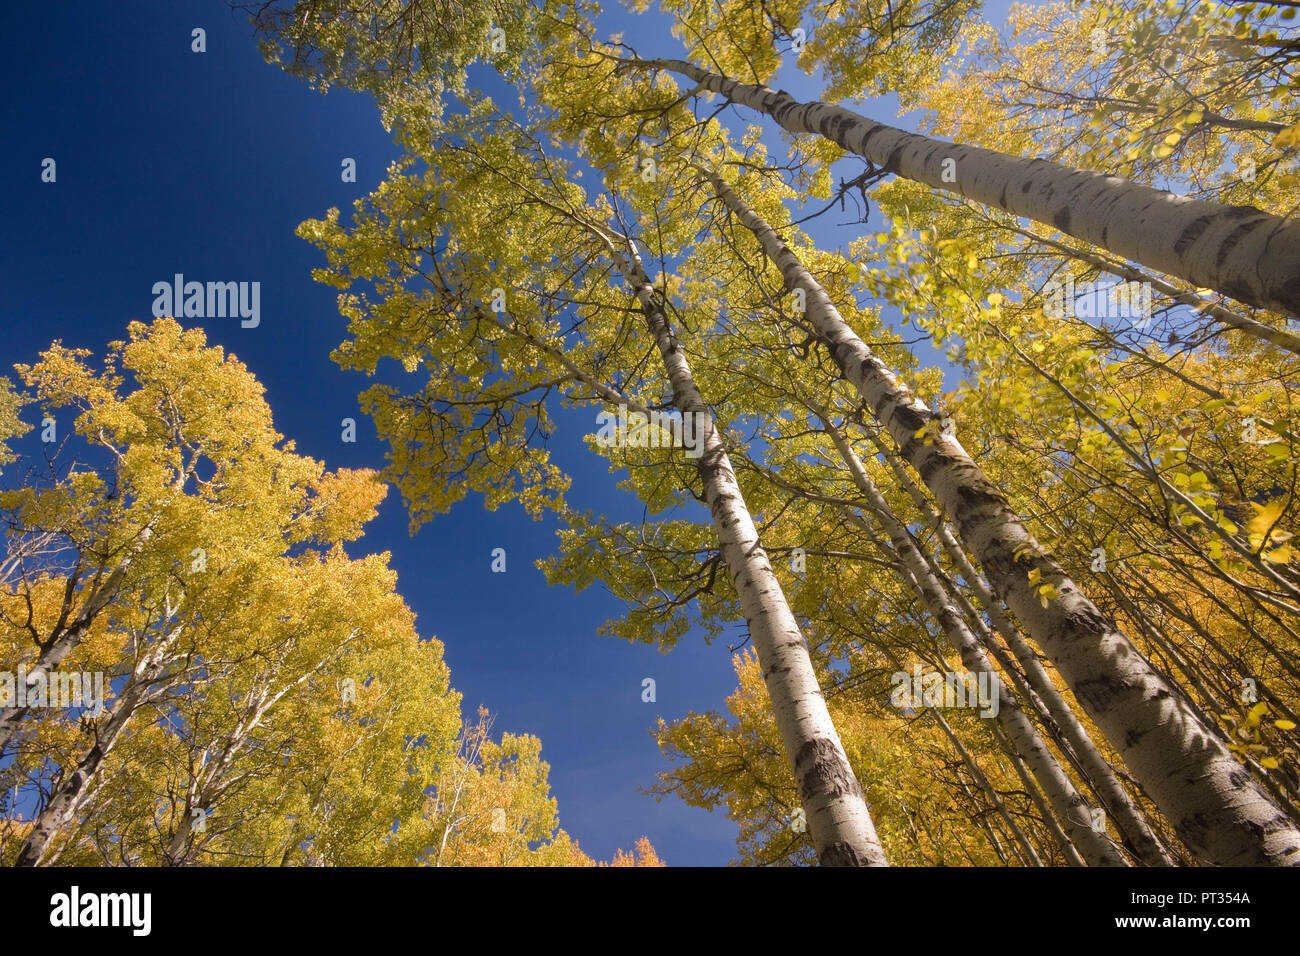 aspen trees in fall, yellow with blue sky, shot into sky, Kananaskis country, Alberta, Canada, Stock Photo